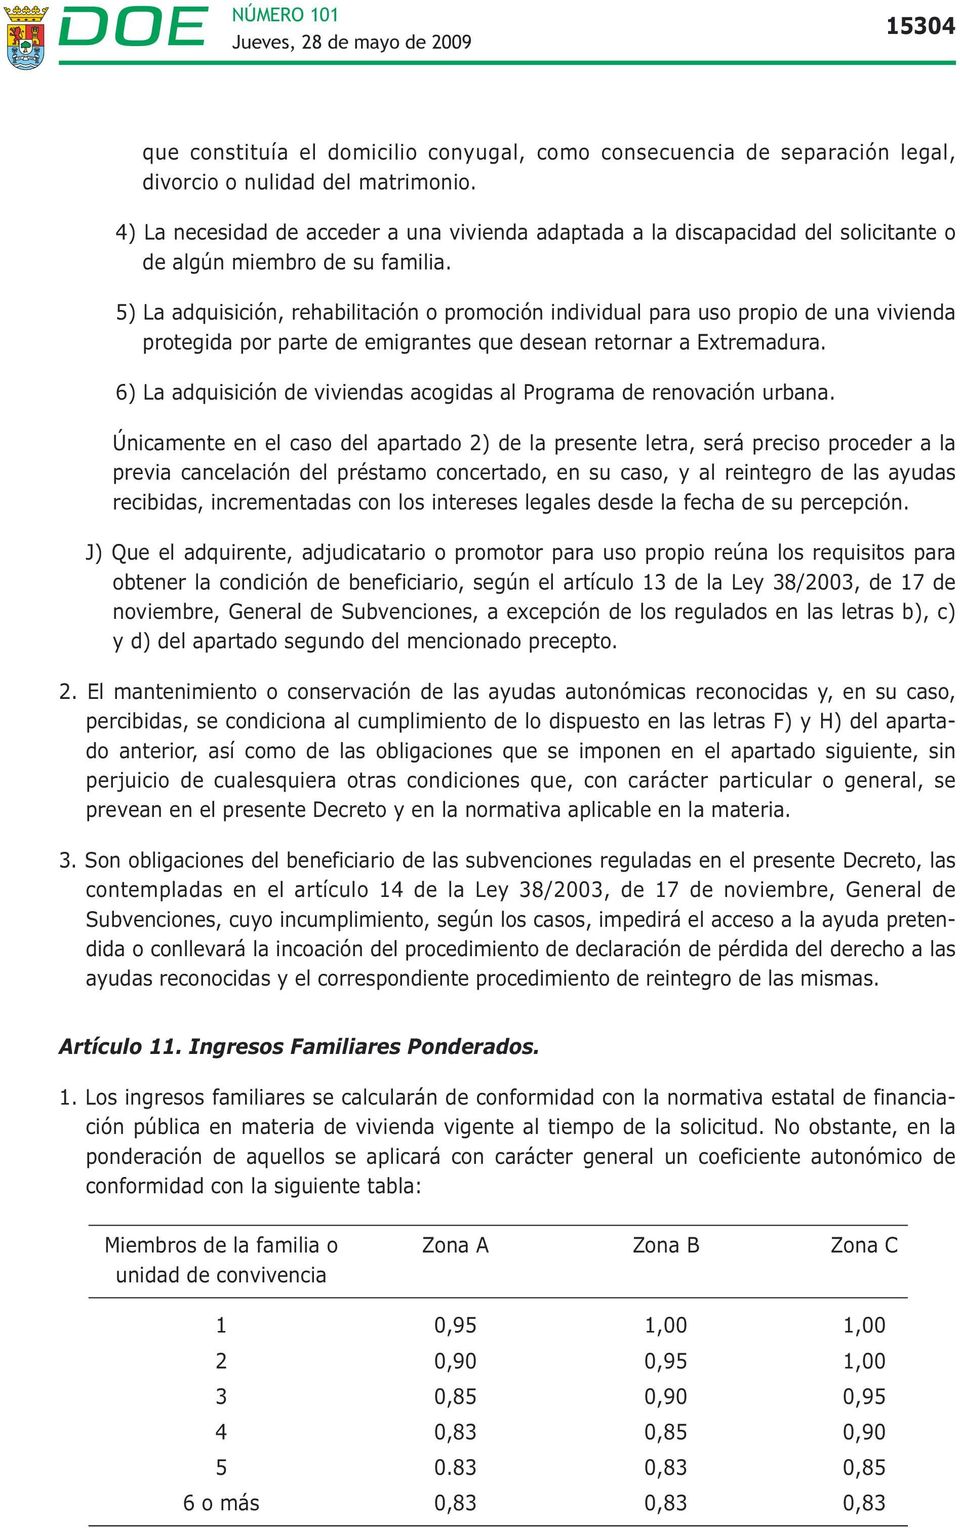 5) La adquisición, rehabilitación o promoción individual para uso propio de una vivienda protegida por parte de emigrantes que desean retornar a Extremadura.